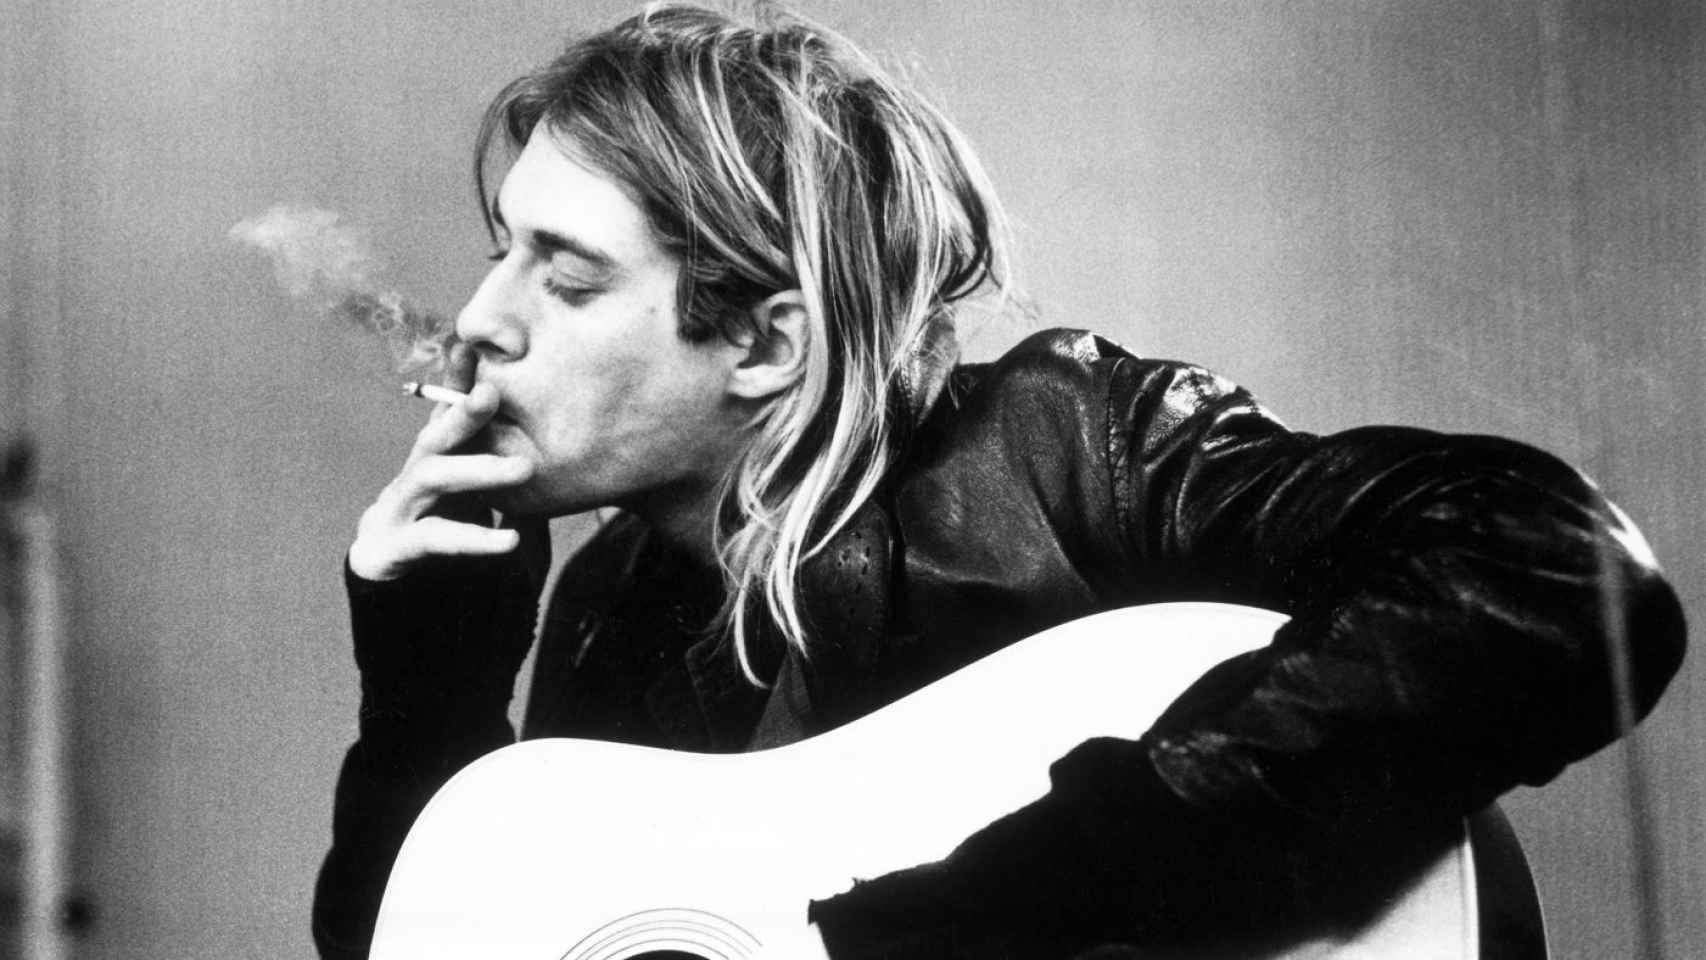 Kurt Cobain fumando en estudio de grabación